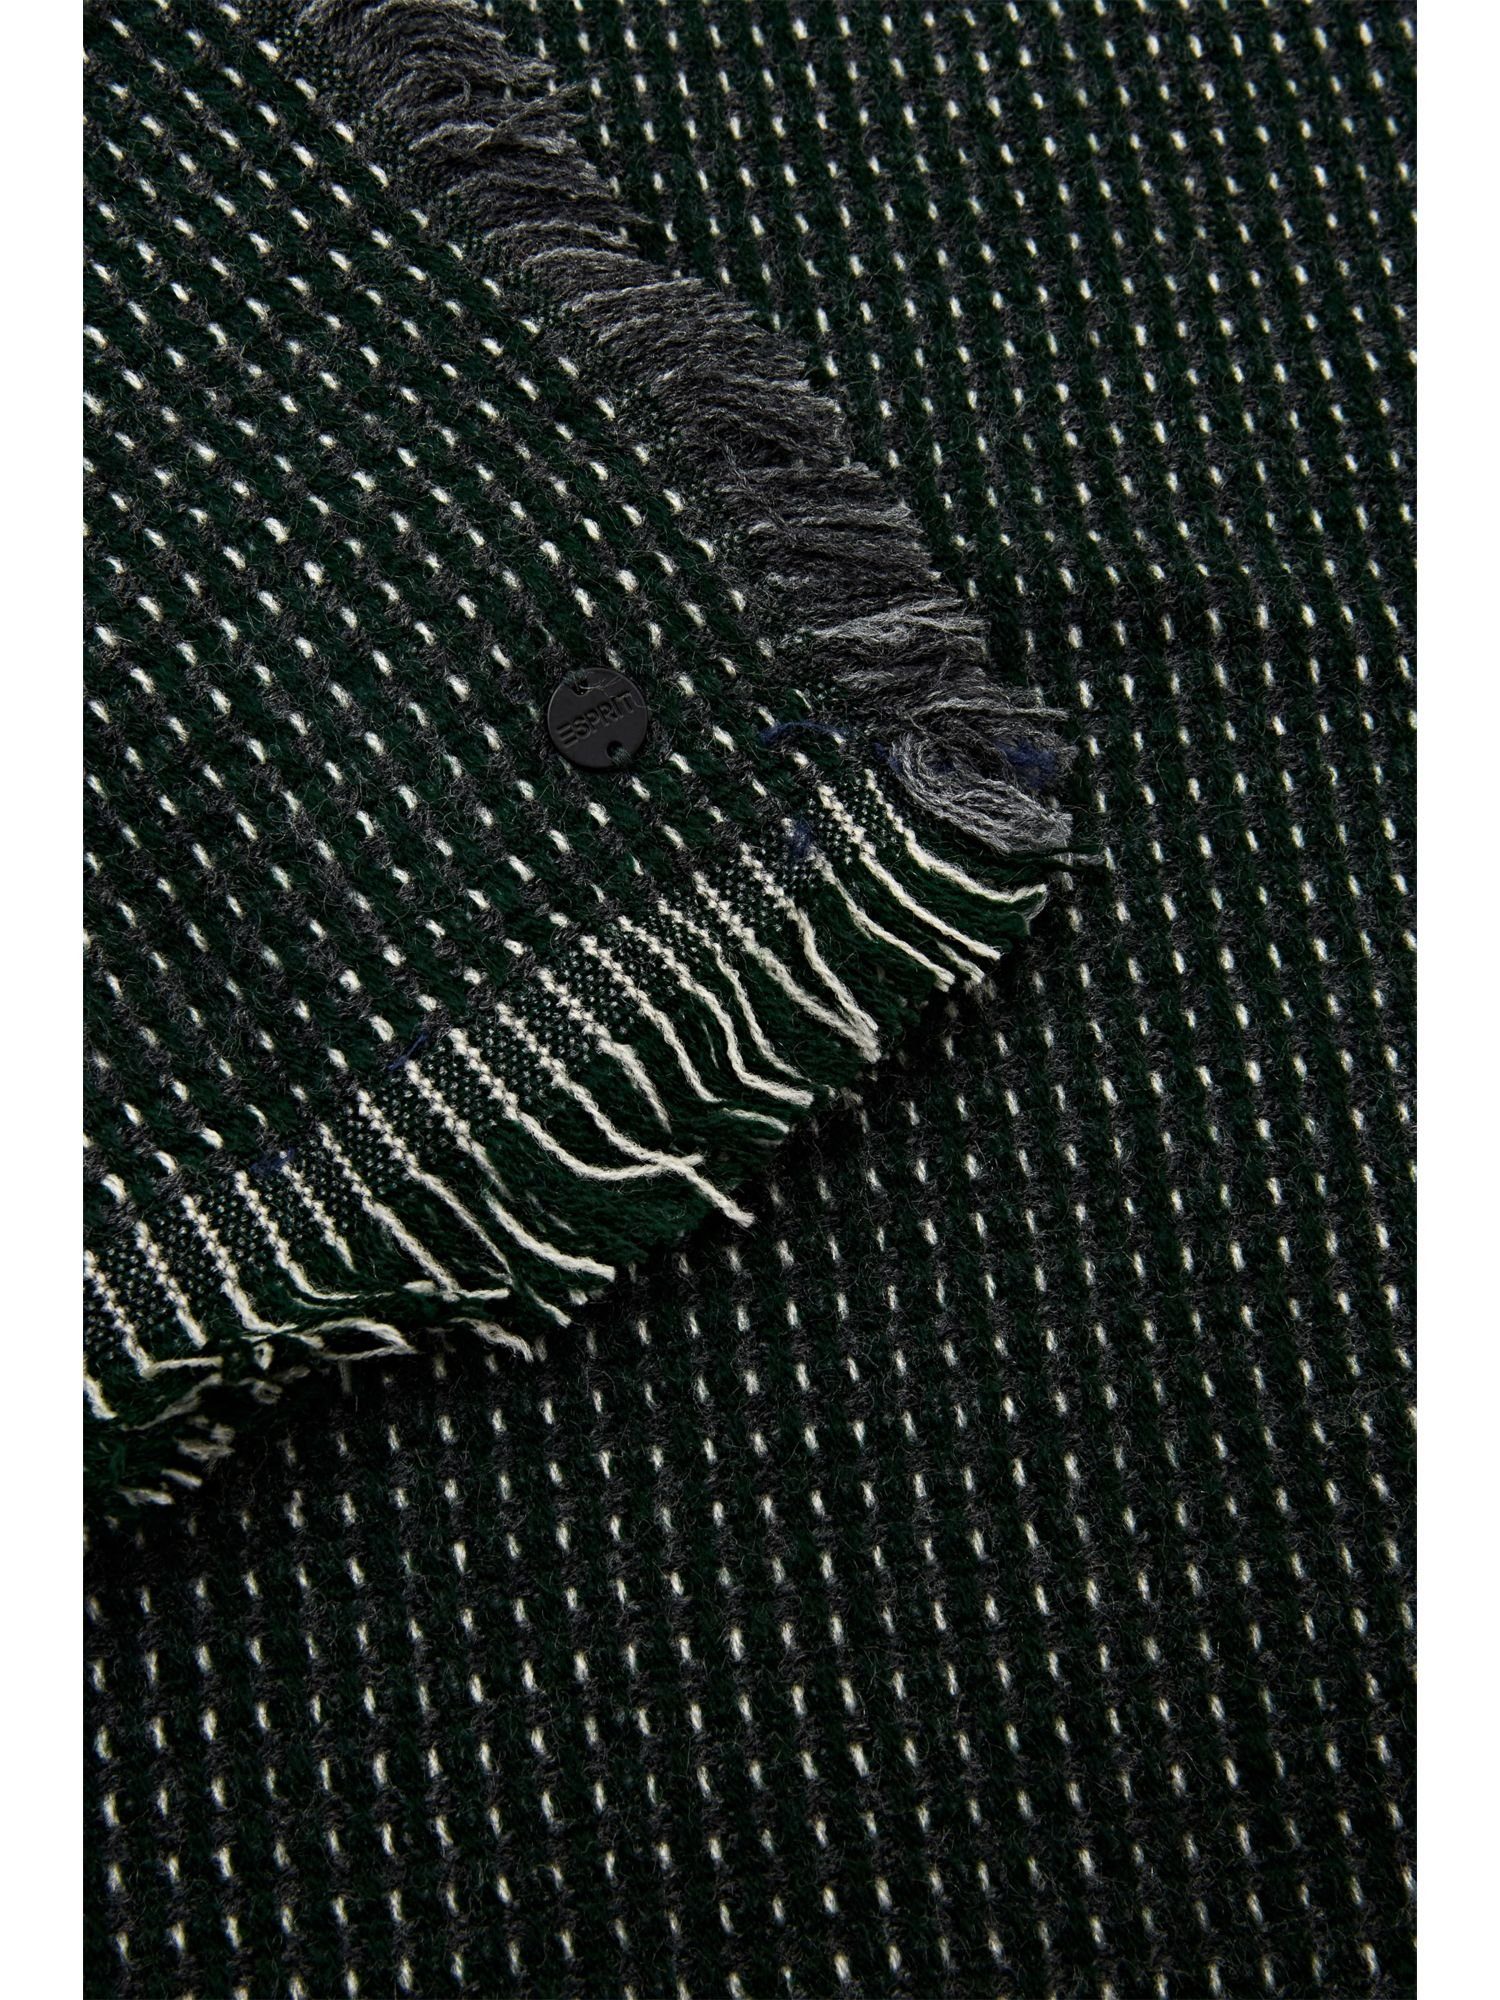 Strukturierter, GREEN Modeschal Esprit Schal EMERALD gewebter